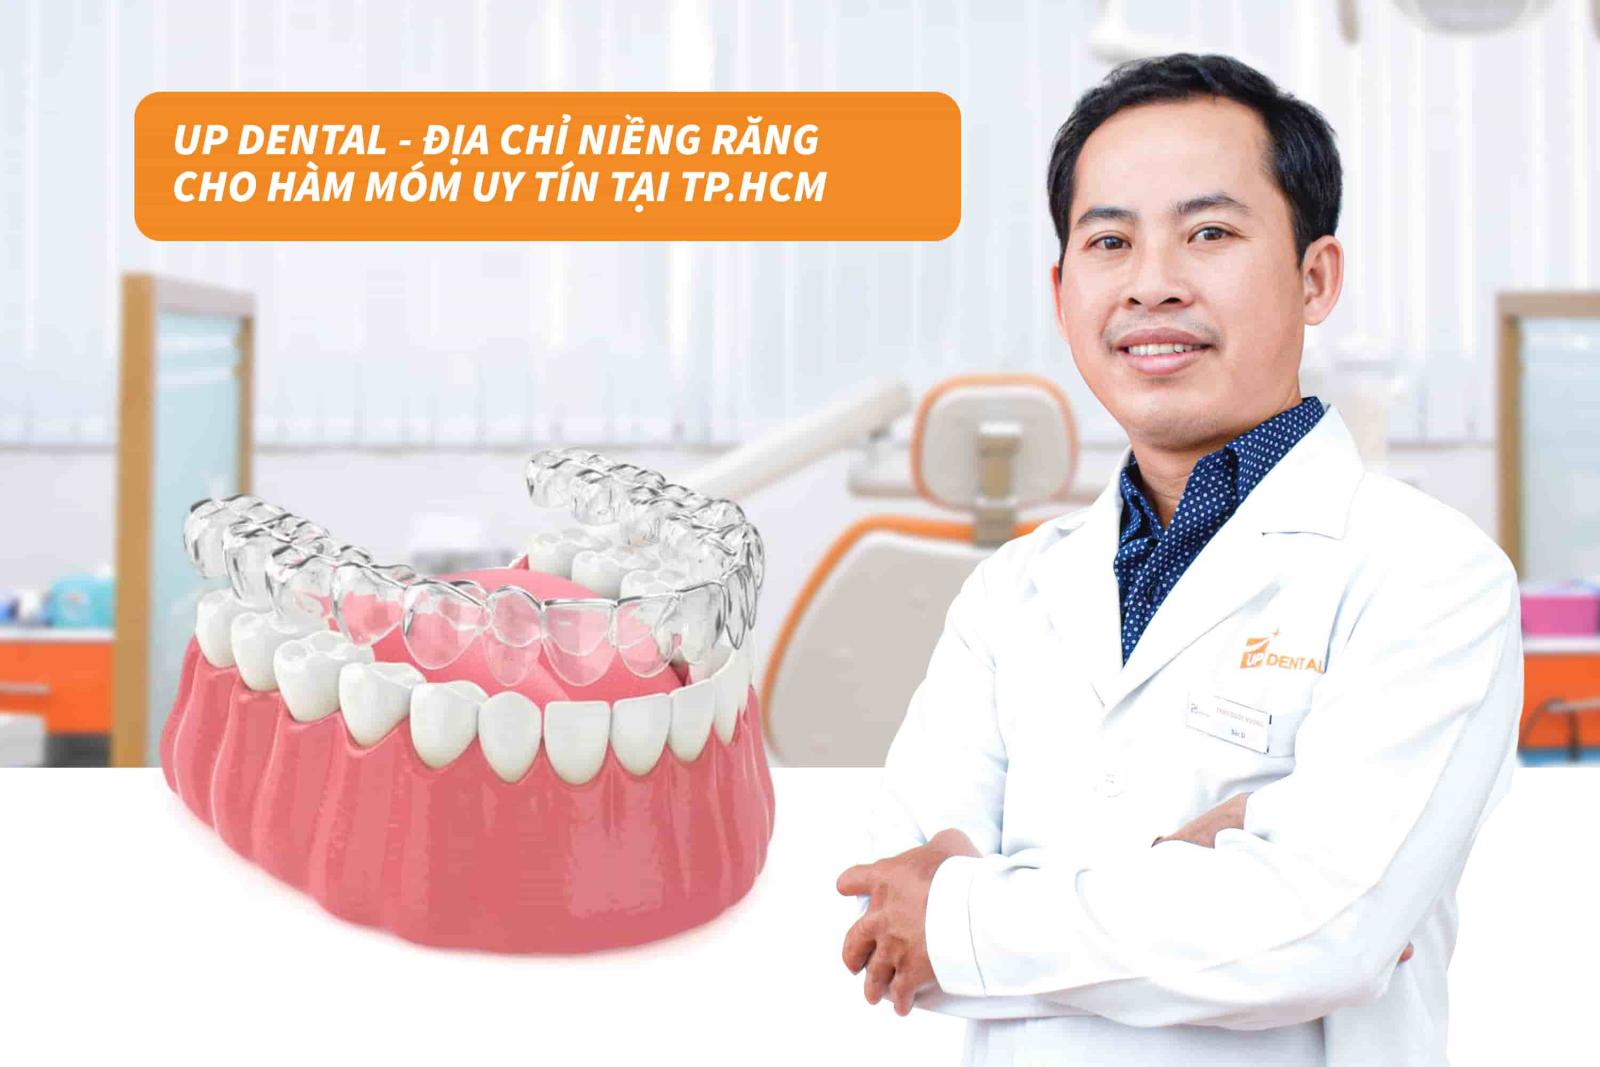 Up Dental - Địa chỉ niềng răng cho hàm móm uy tín tại TP.HCM 